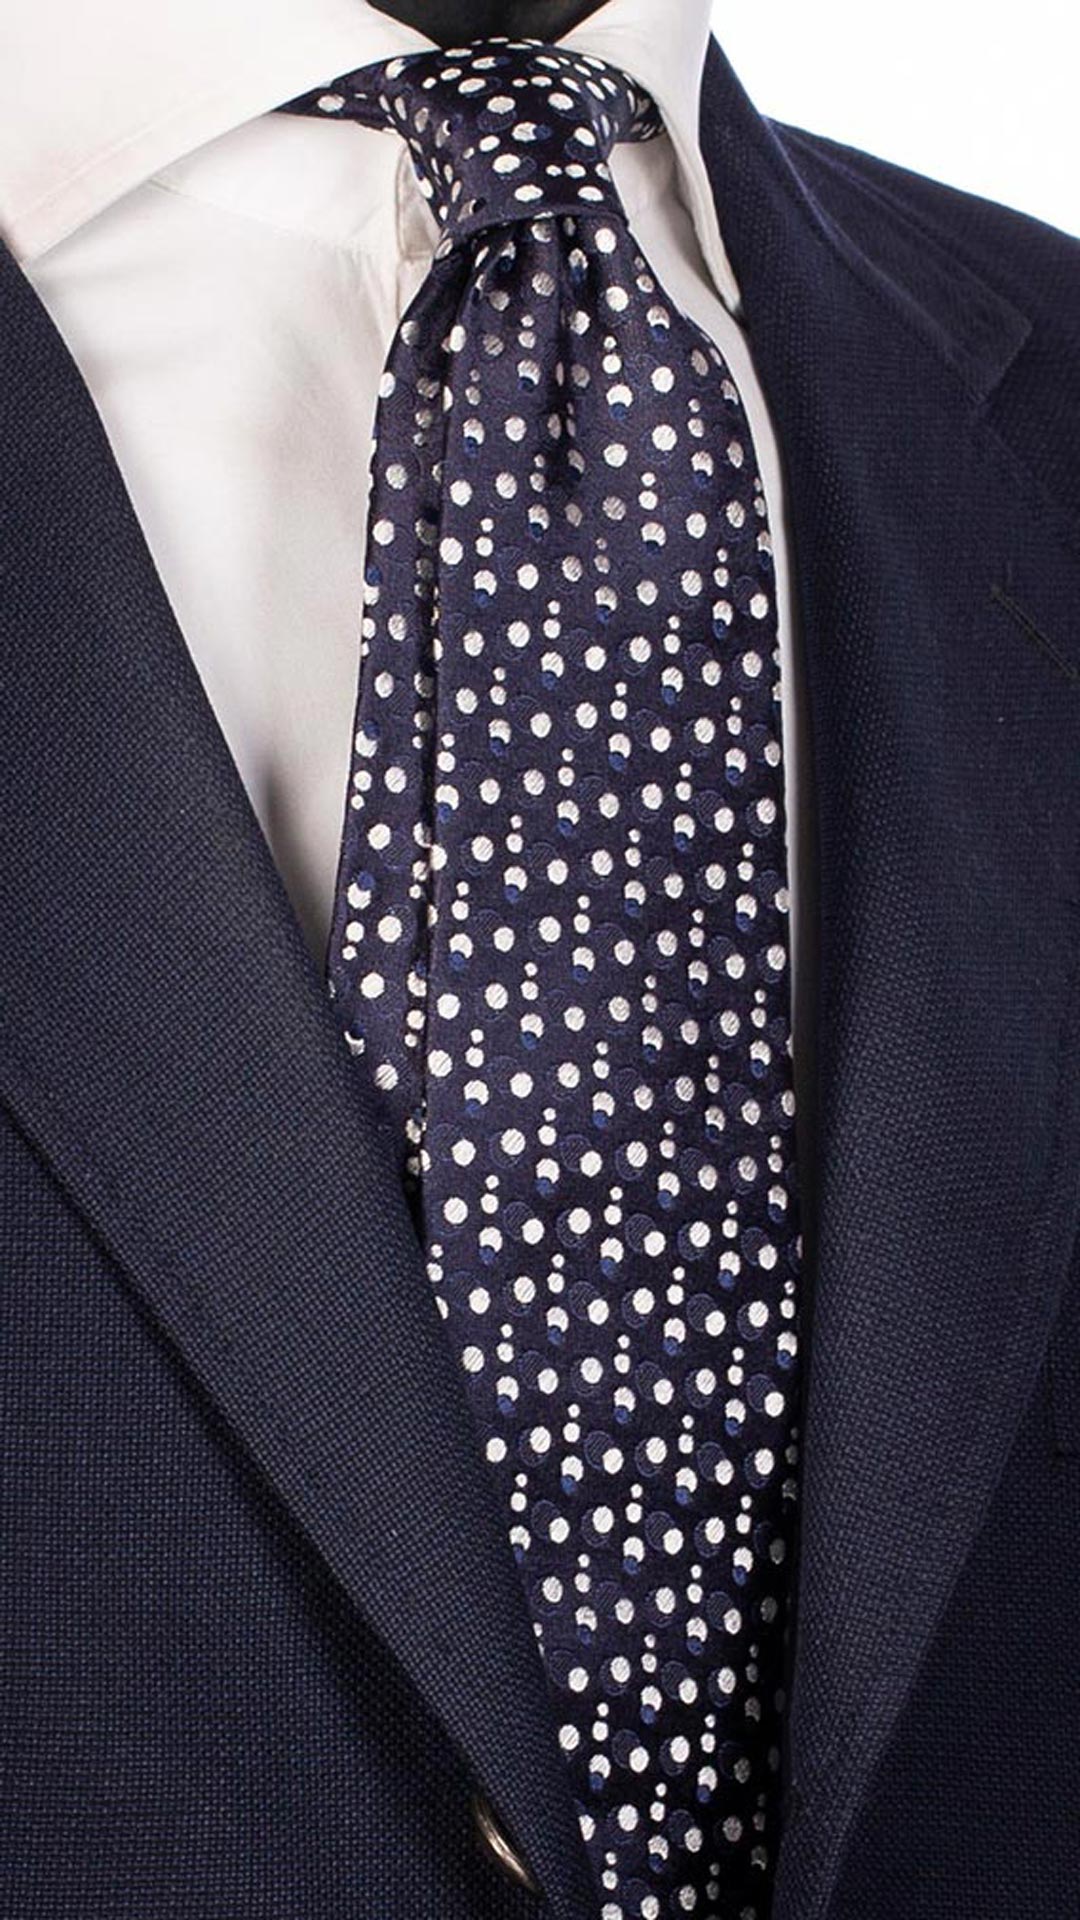 Cravatta da Cerimonia di Seta Blu Fantasia Tono su Tono Bianco CY5478 Made in italy Graffeo Cravatte